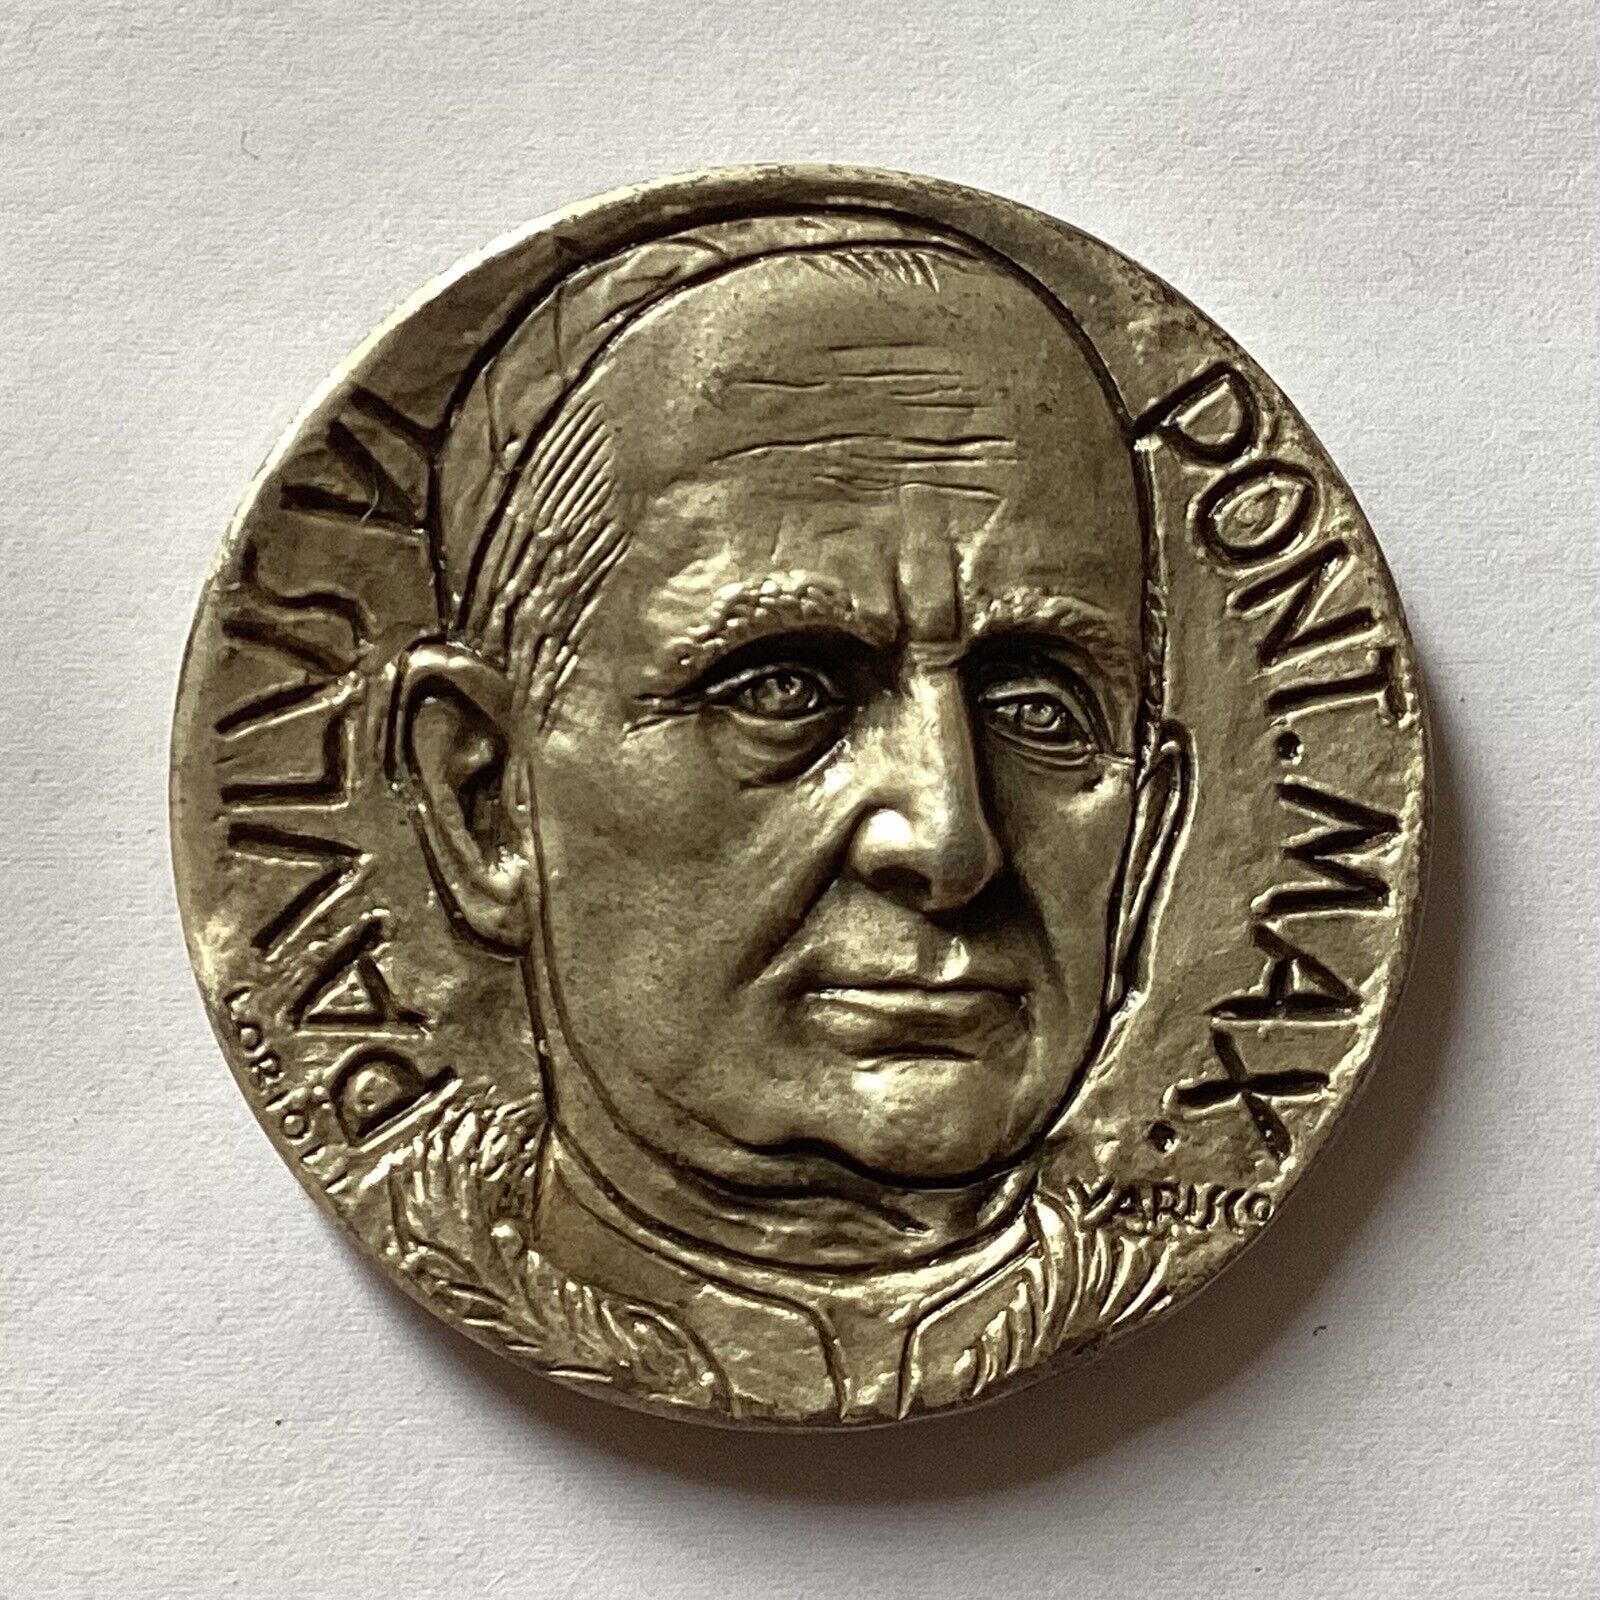 VTG Pope Paul VI Silver Plated Bronze Medal 1964, 2